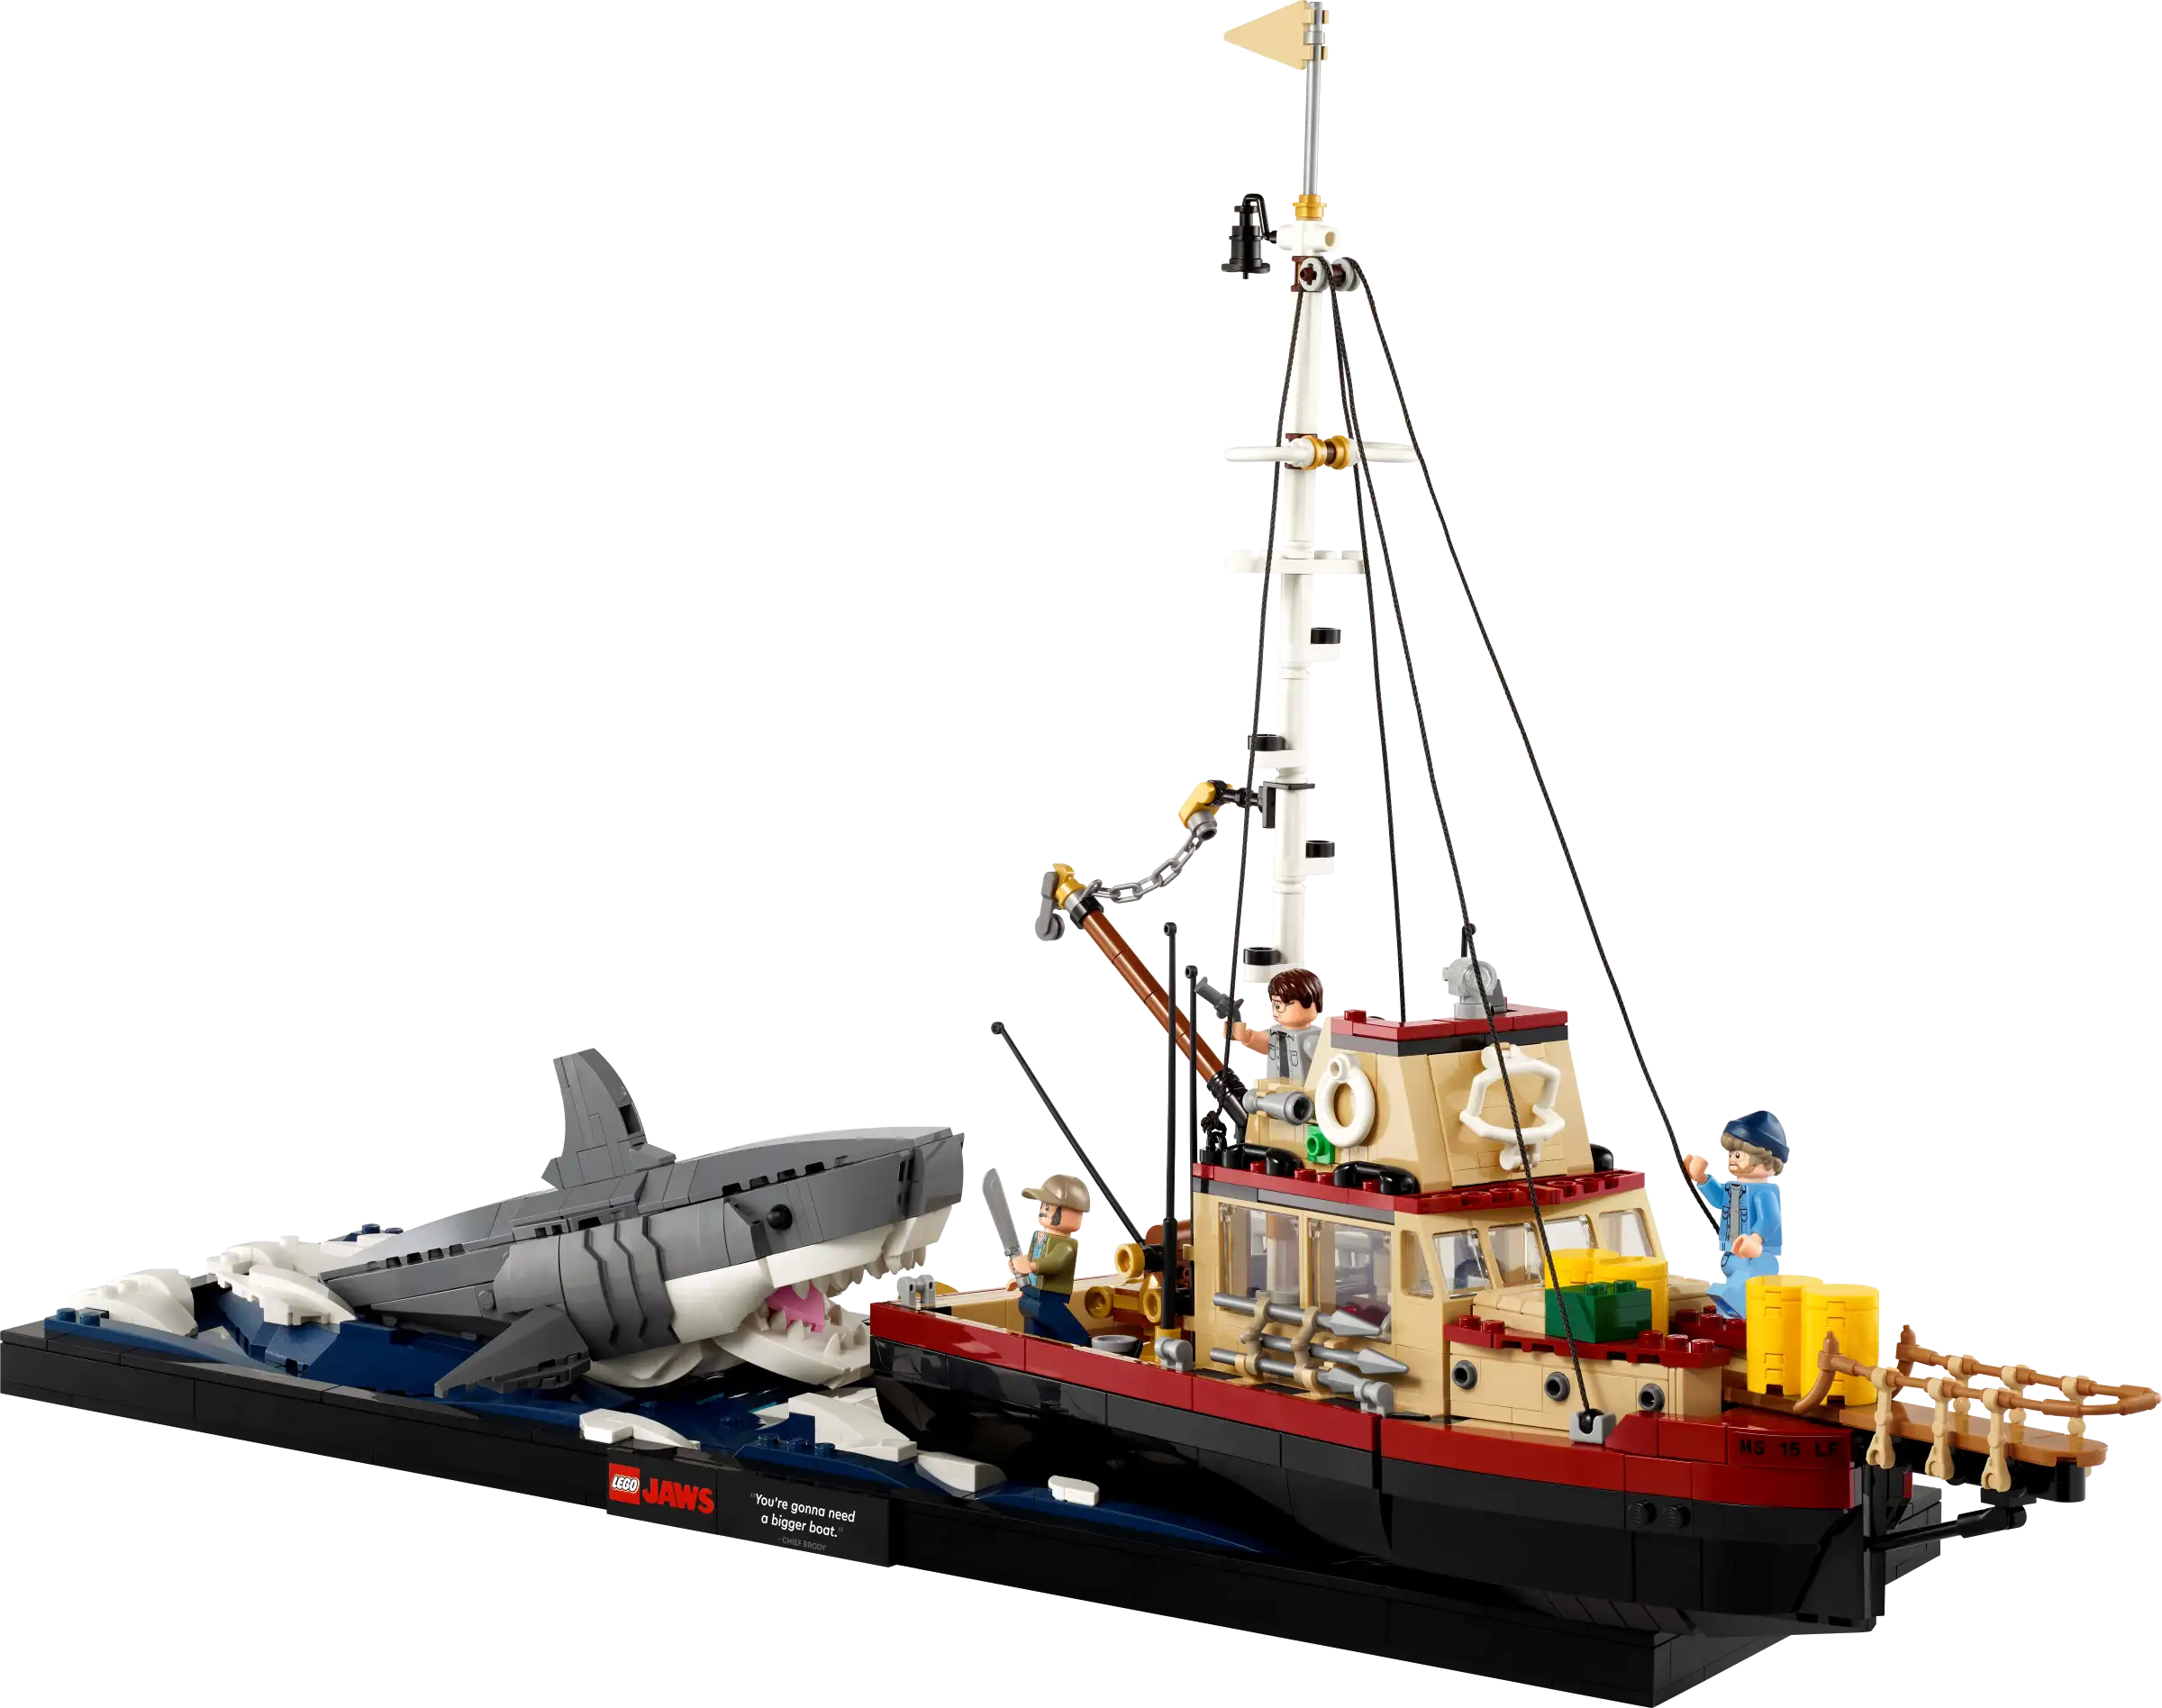 LEGO Jaws